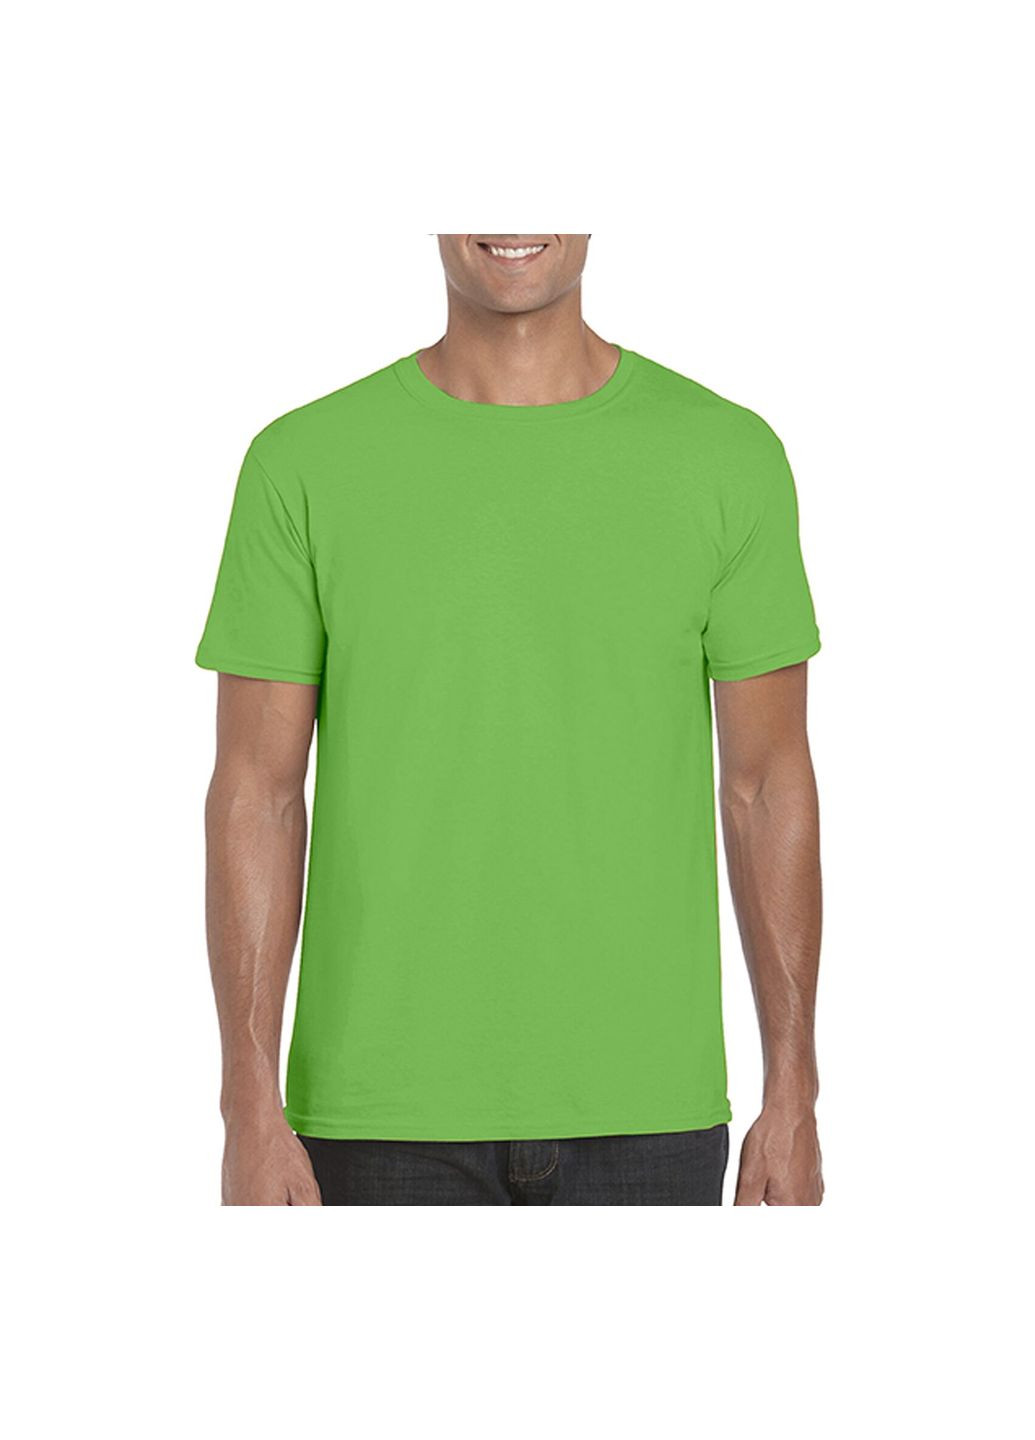 Зелена футболка чоловіча однотонна зелена 64000-361c з коротким рукавом Gildan Softstyle